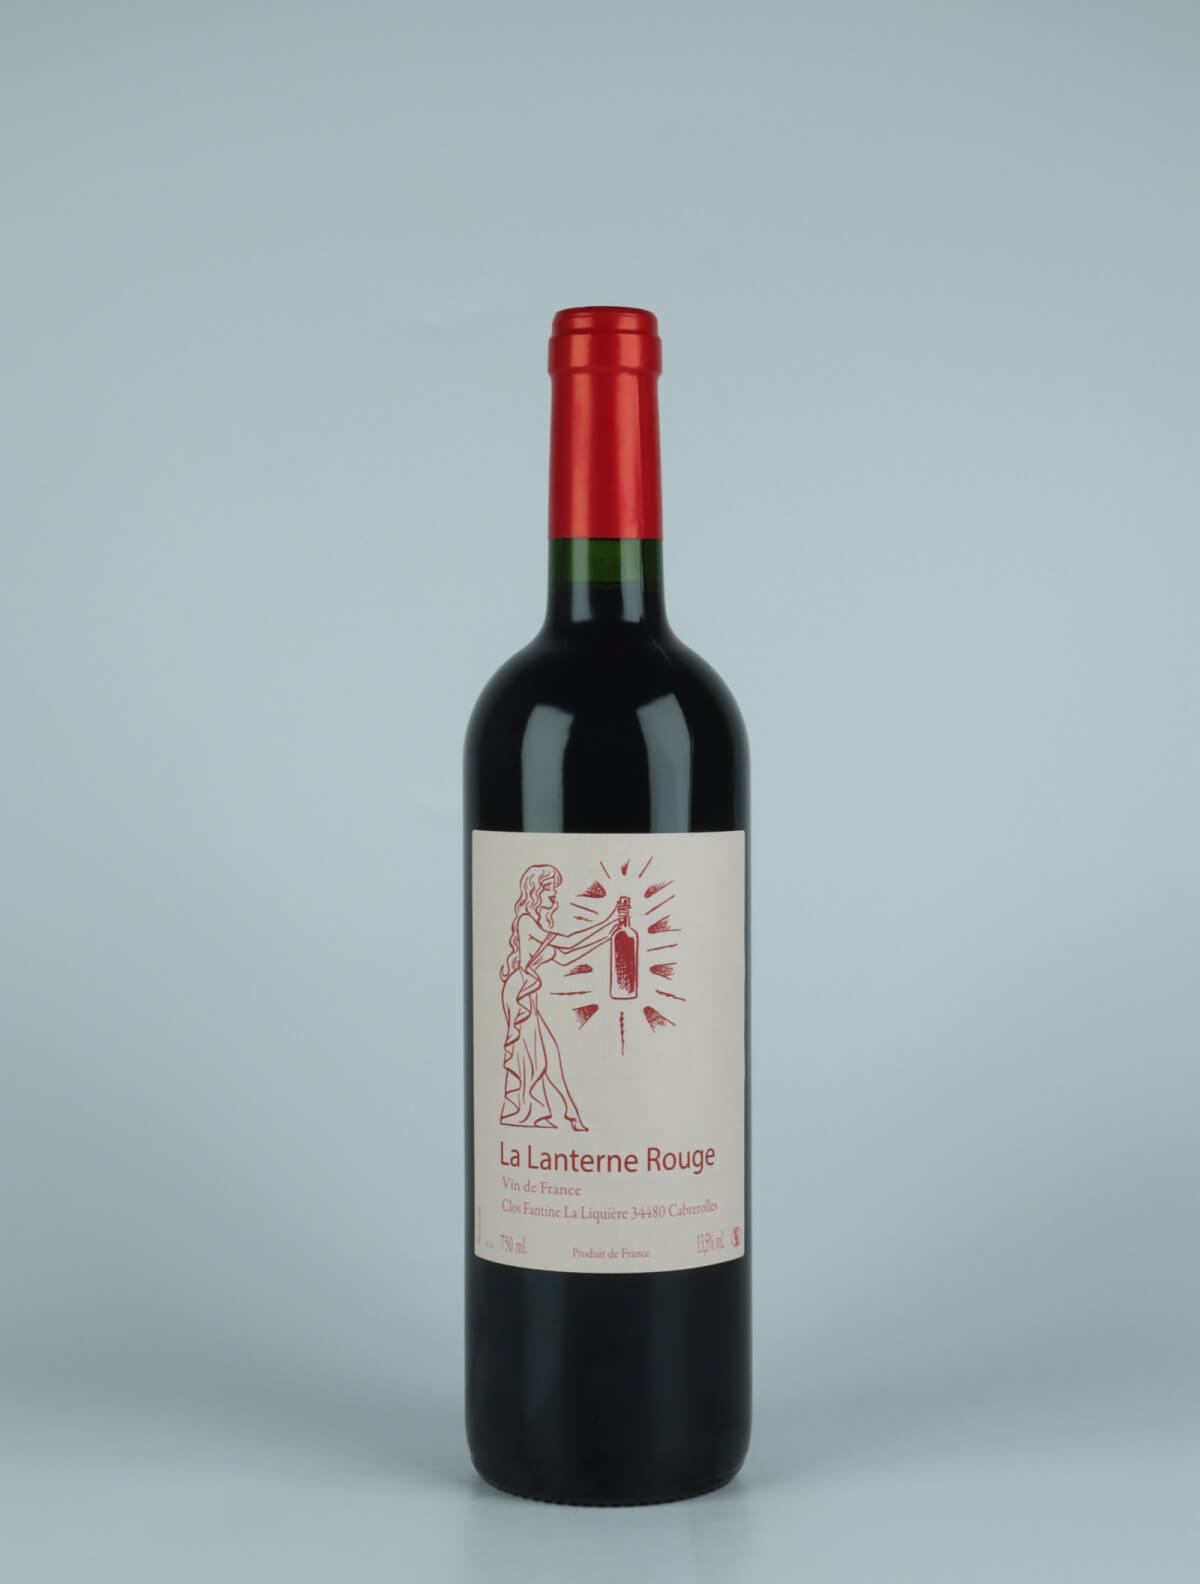 En flaske 2021 La Lanterne Rouge Rødvin fra Clos Fantine, Languedoc i Frankrig